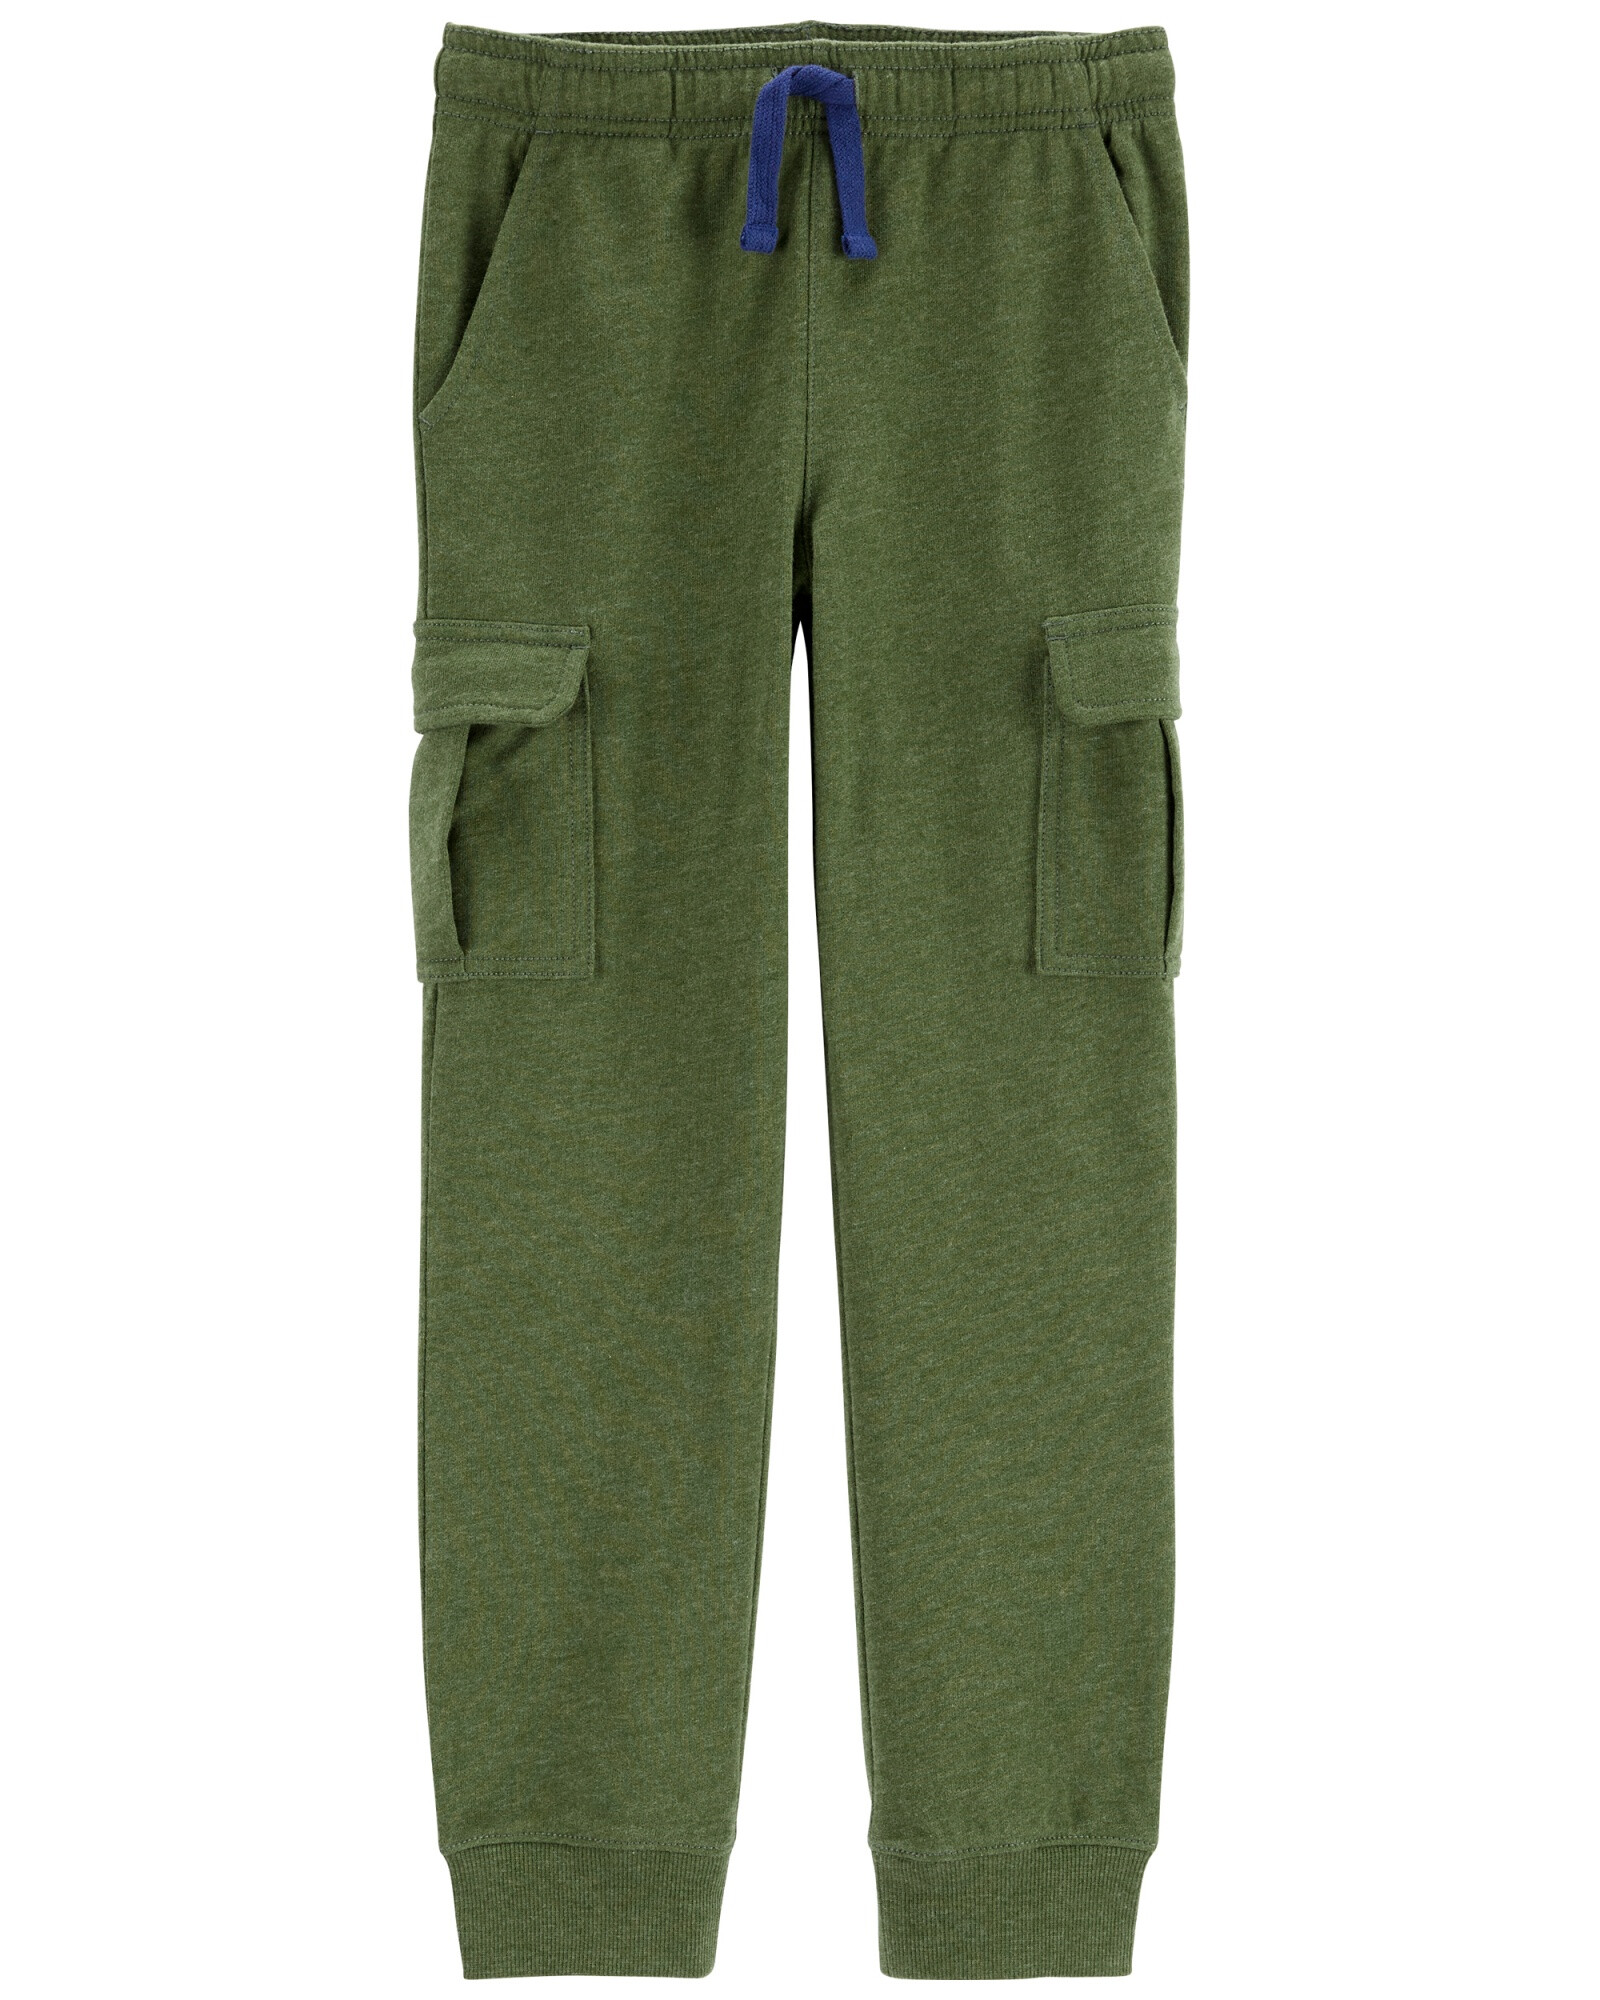 Pantalón cargo de algodón, verde. Talles 6-8 Sin color